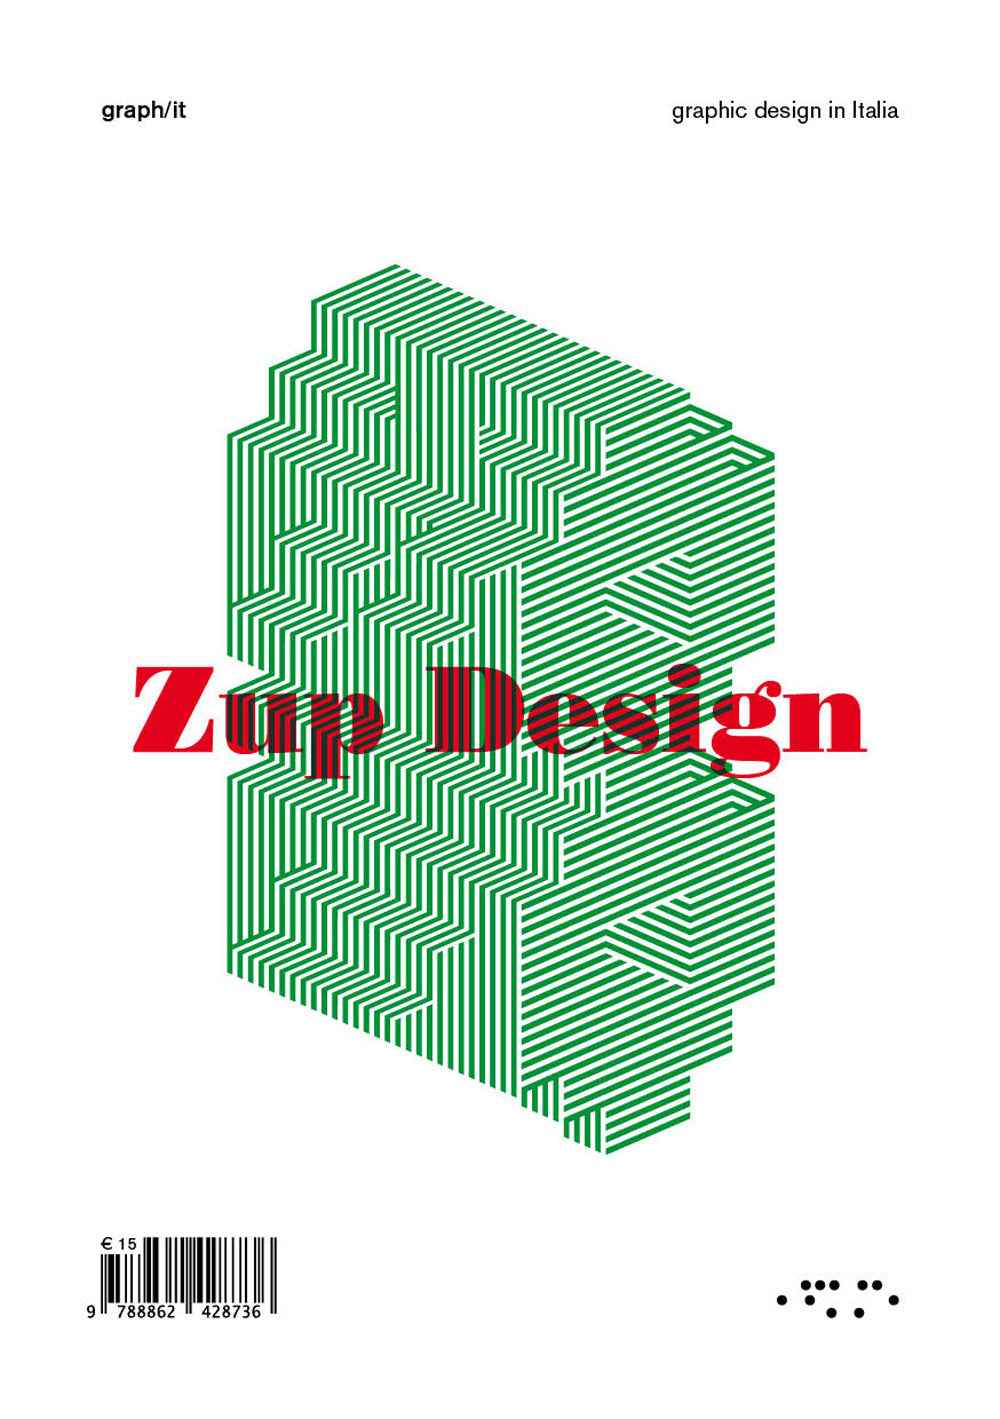 Zup design